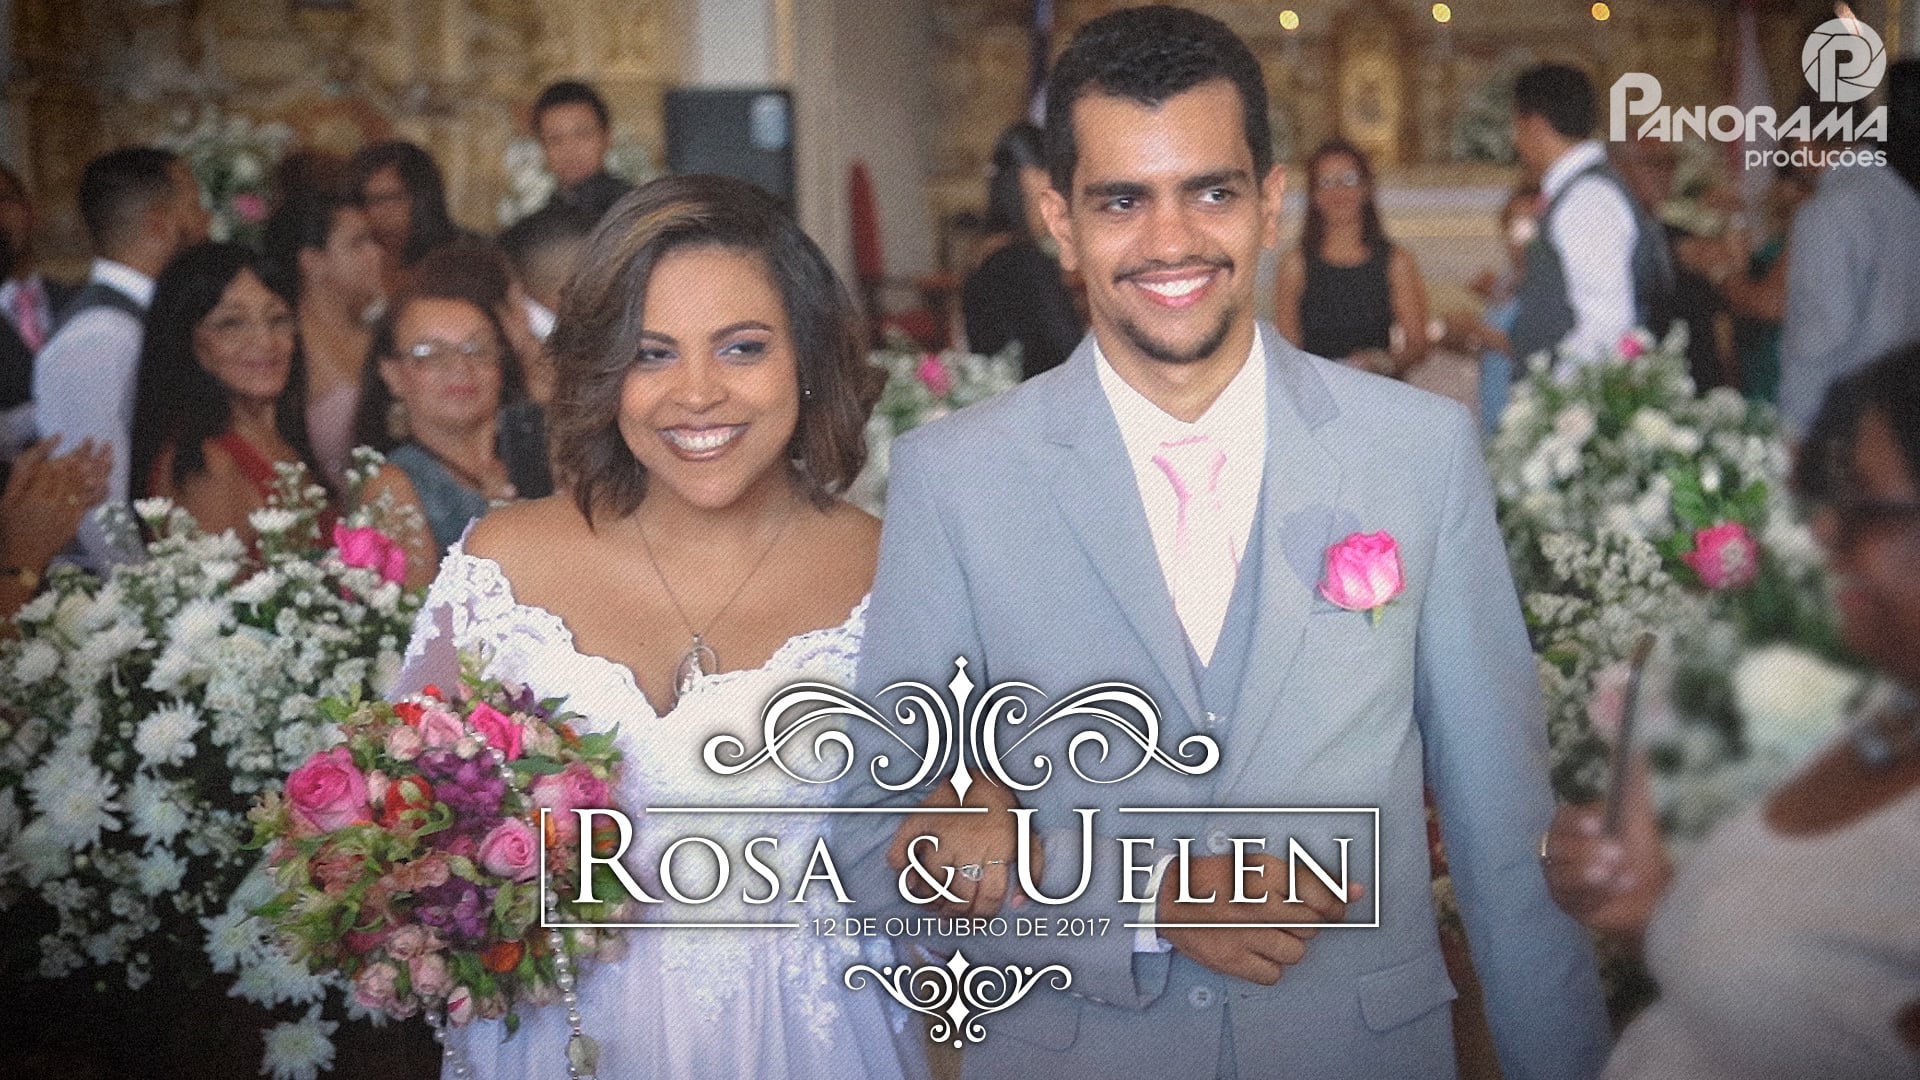 Rosa e Uelen - Trailer de Casamento (Panorama Produções)